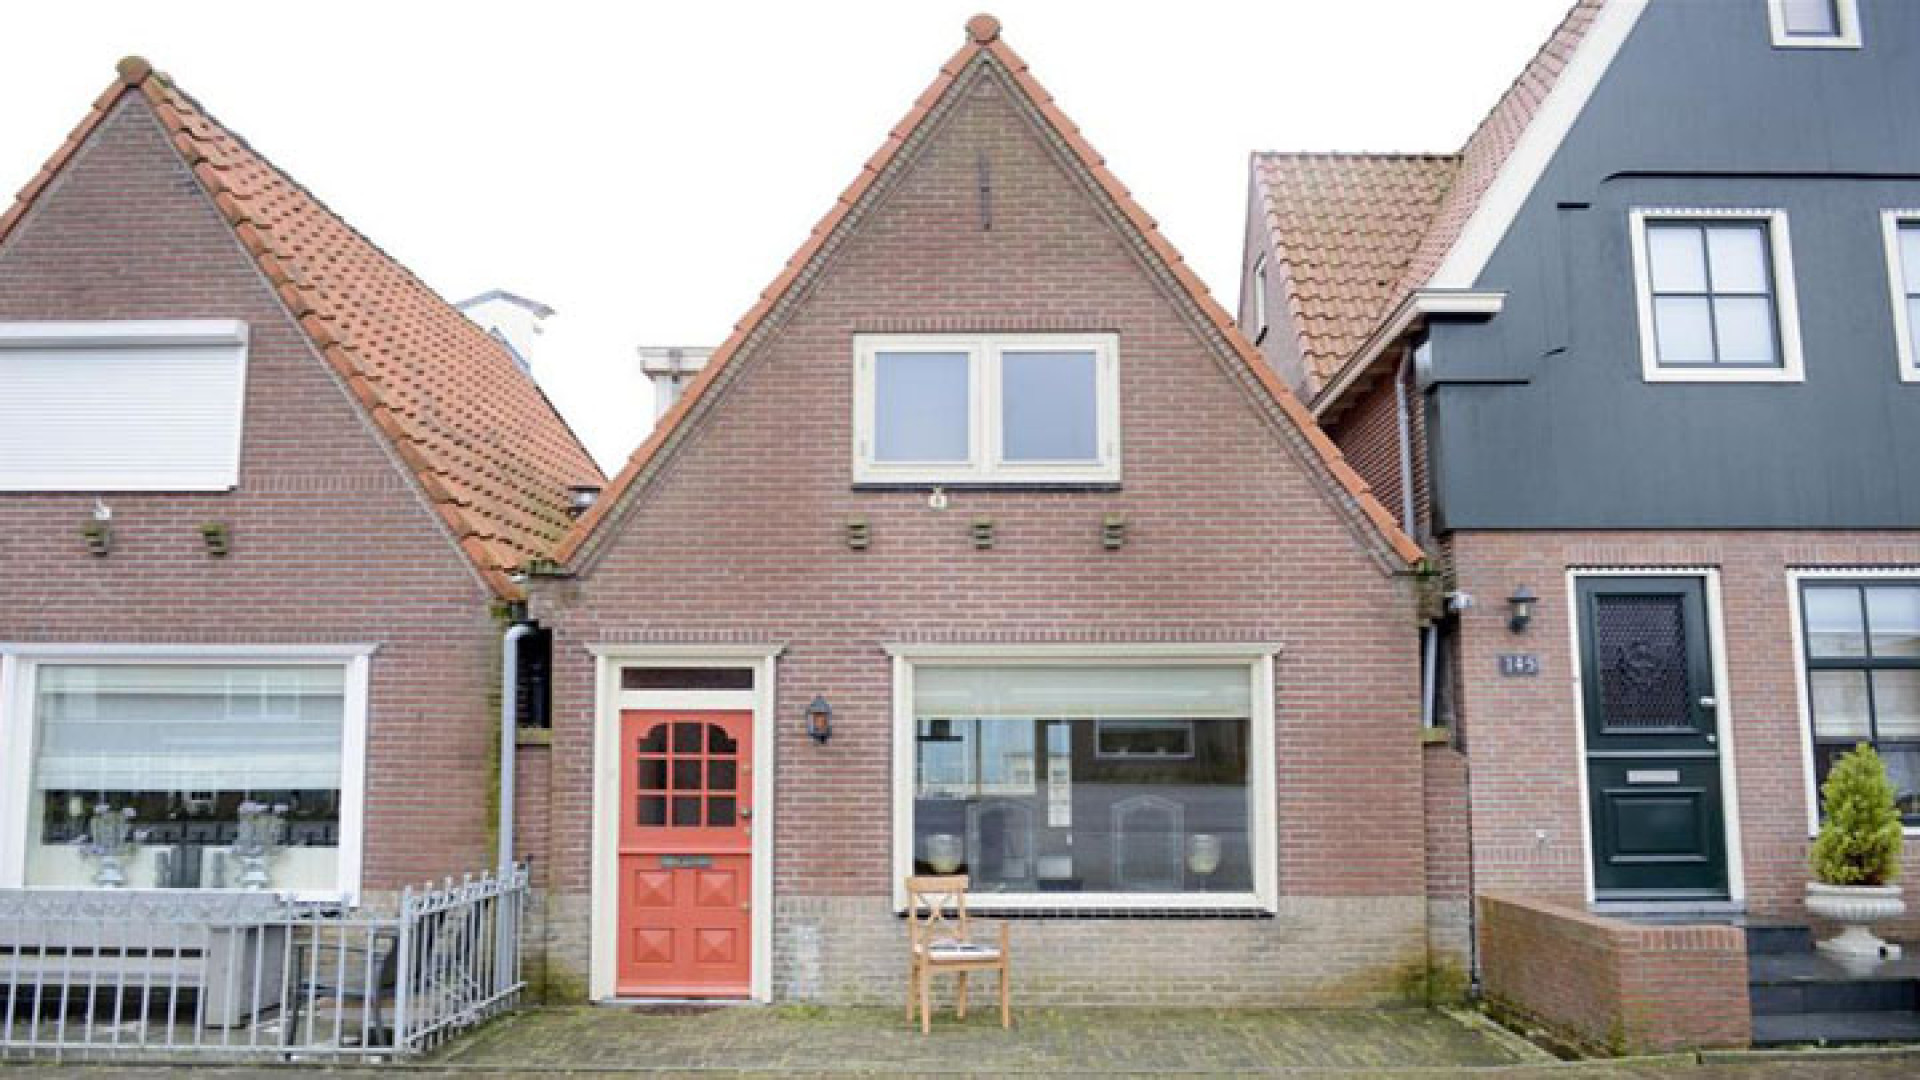 Yolanthe heeft haar Volendamse dijkwoning tegen dramatisch lage prijs verkocht. Zie foto's 2